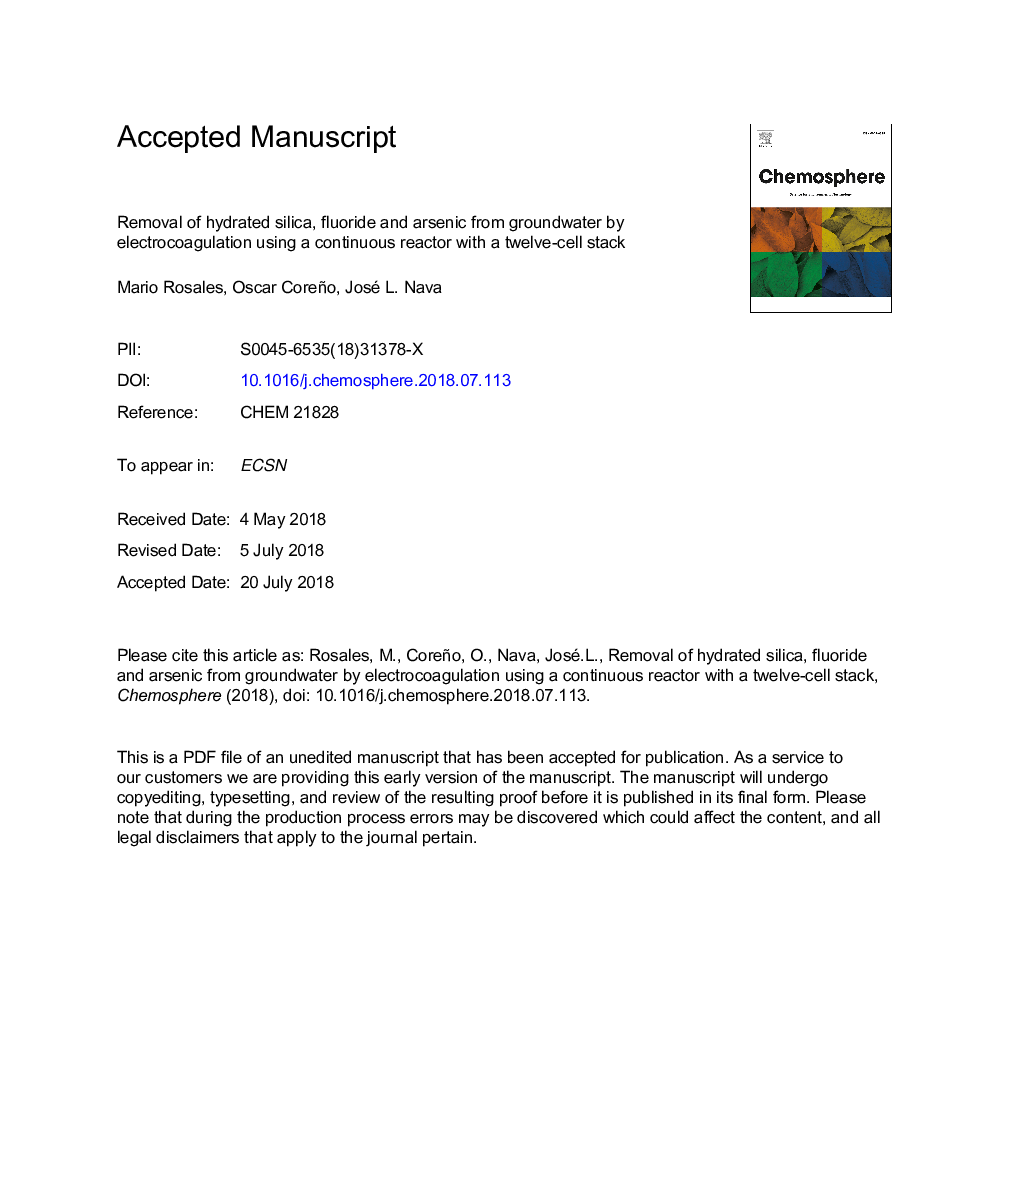 حذف سیلیس هیدراته، فلوراید و آرسنیک از آبهای زیرزمینی توسط الکتروکواگولاسیون با استفاده از یک راکتور پیوسته با یک پشته دوازده سلولی 